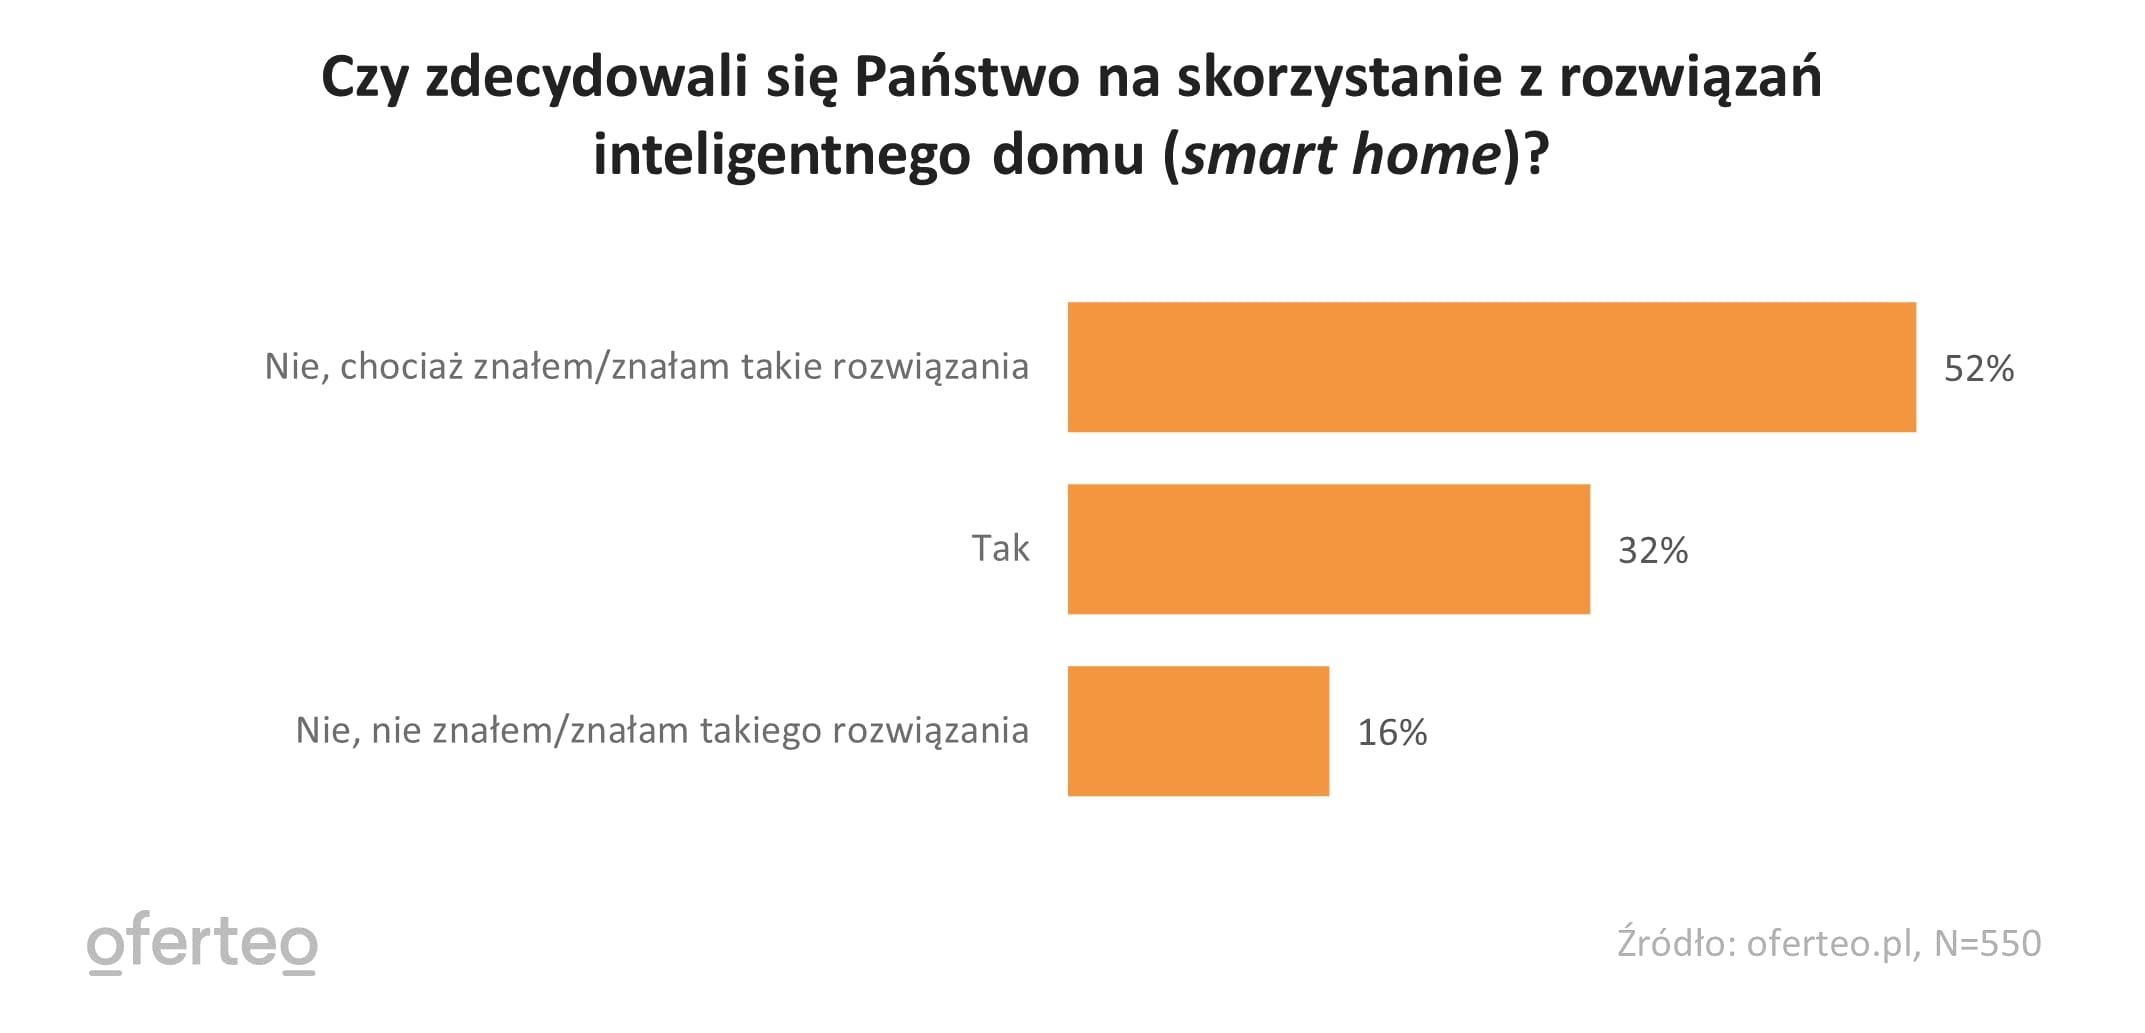 Wykres przedstawiający wybór respondentów w kwestii inteligentnego domu